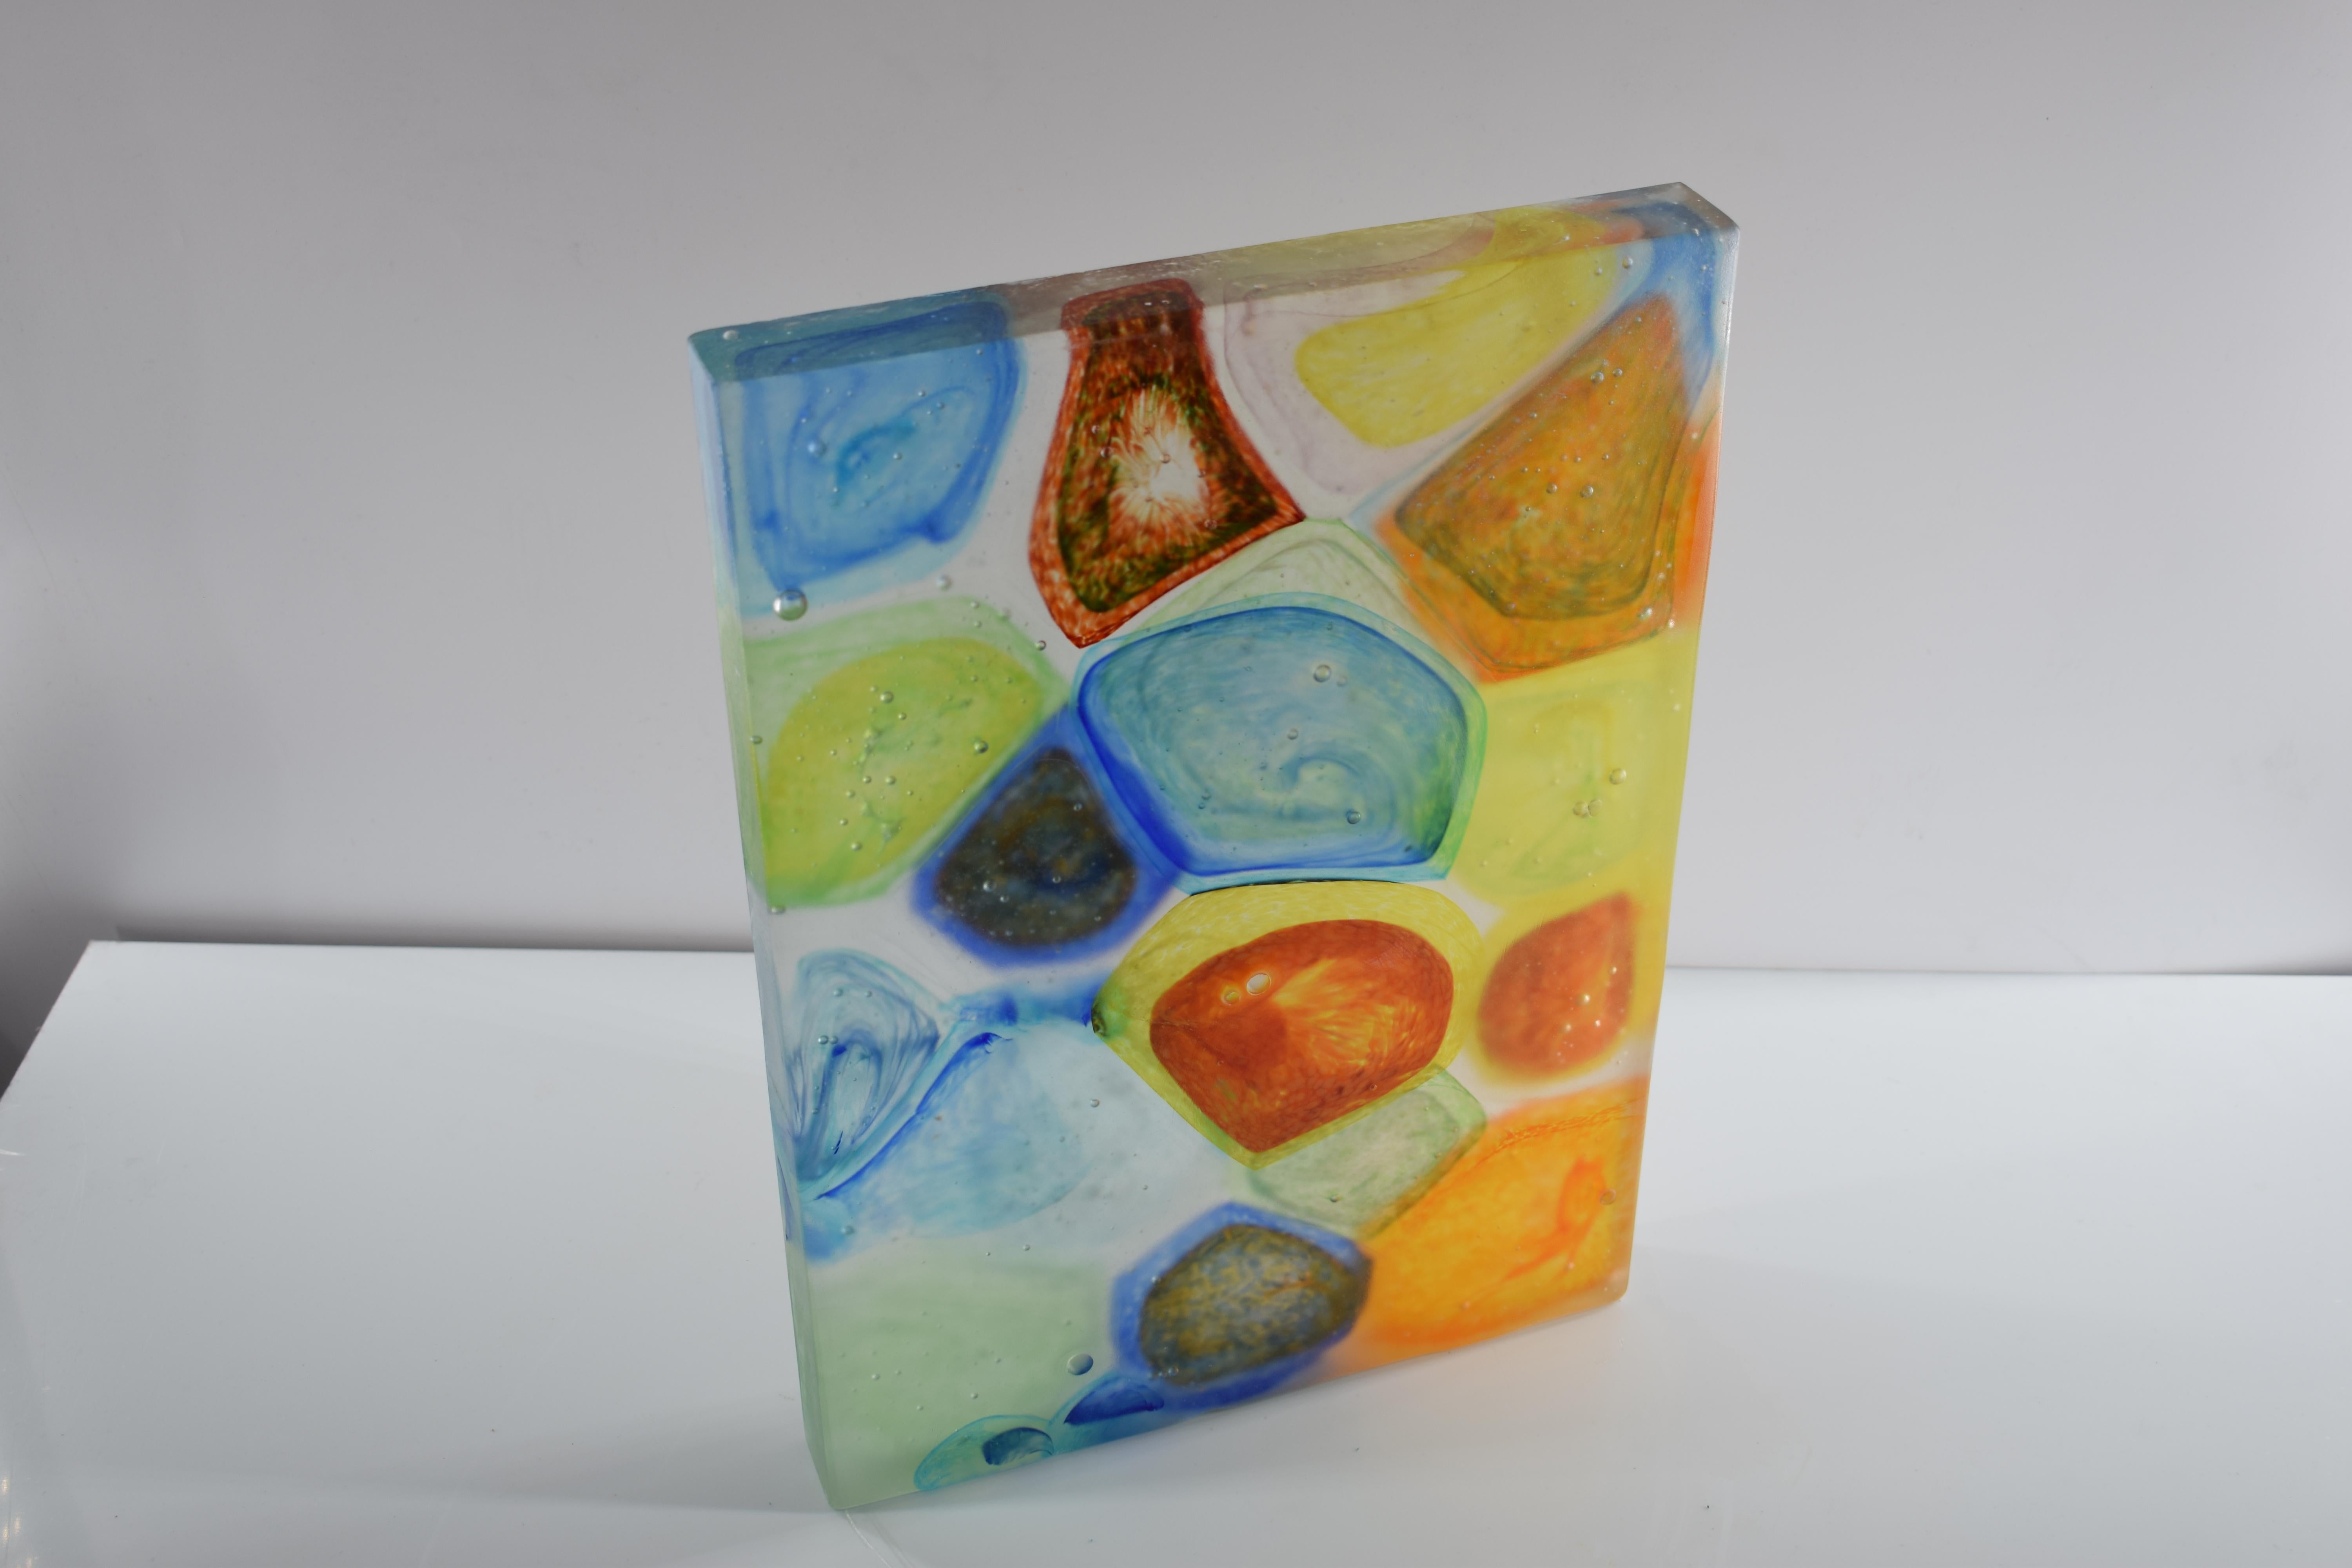 Monolith aus künstlerischem Murano-Glas. Die künstlerische Glasskulptur aus Murano ist ein kreativer und natürlicher Ausdruck des Künstlers Eros Raffael, hergestellt aus Murano-Glas mit einer von Eros Raffael entwickelten Technik. In dieser Skulptur